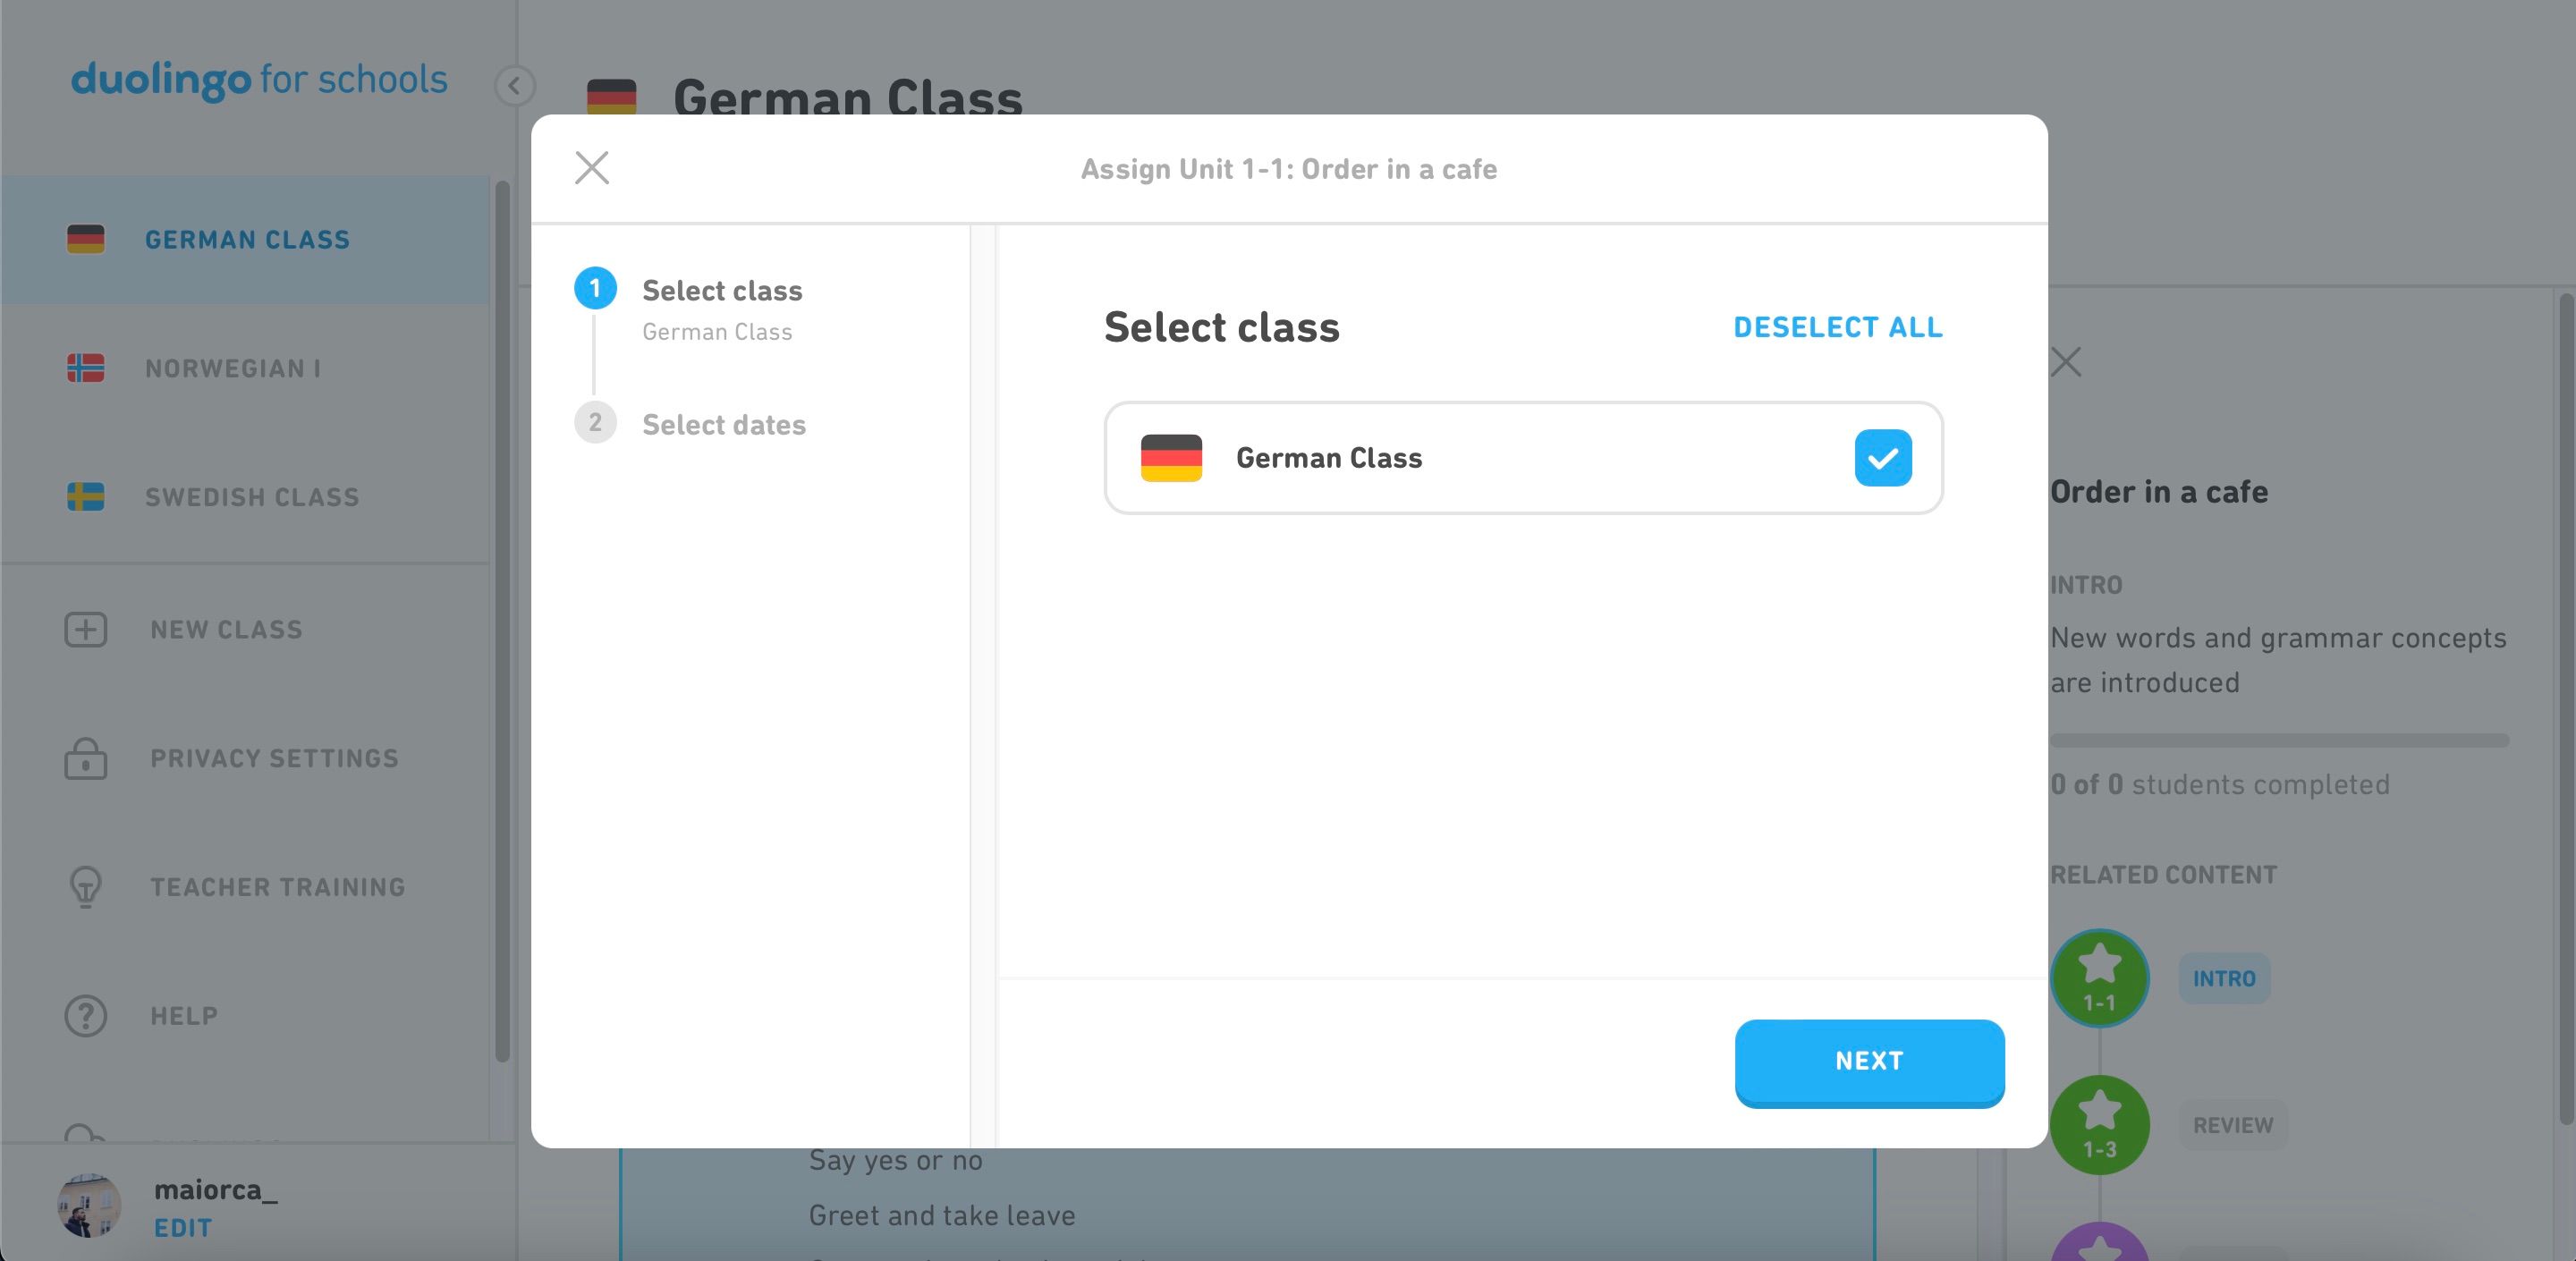 Scegli Nuova classe da assegnare in Duolingo per la schermata delle scuole